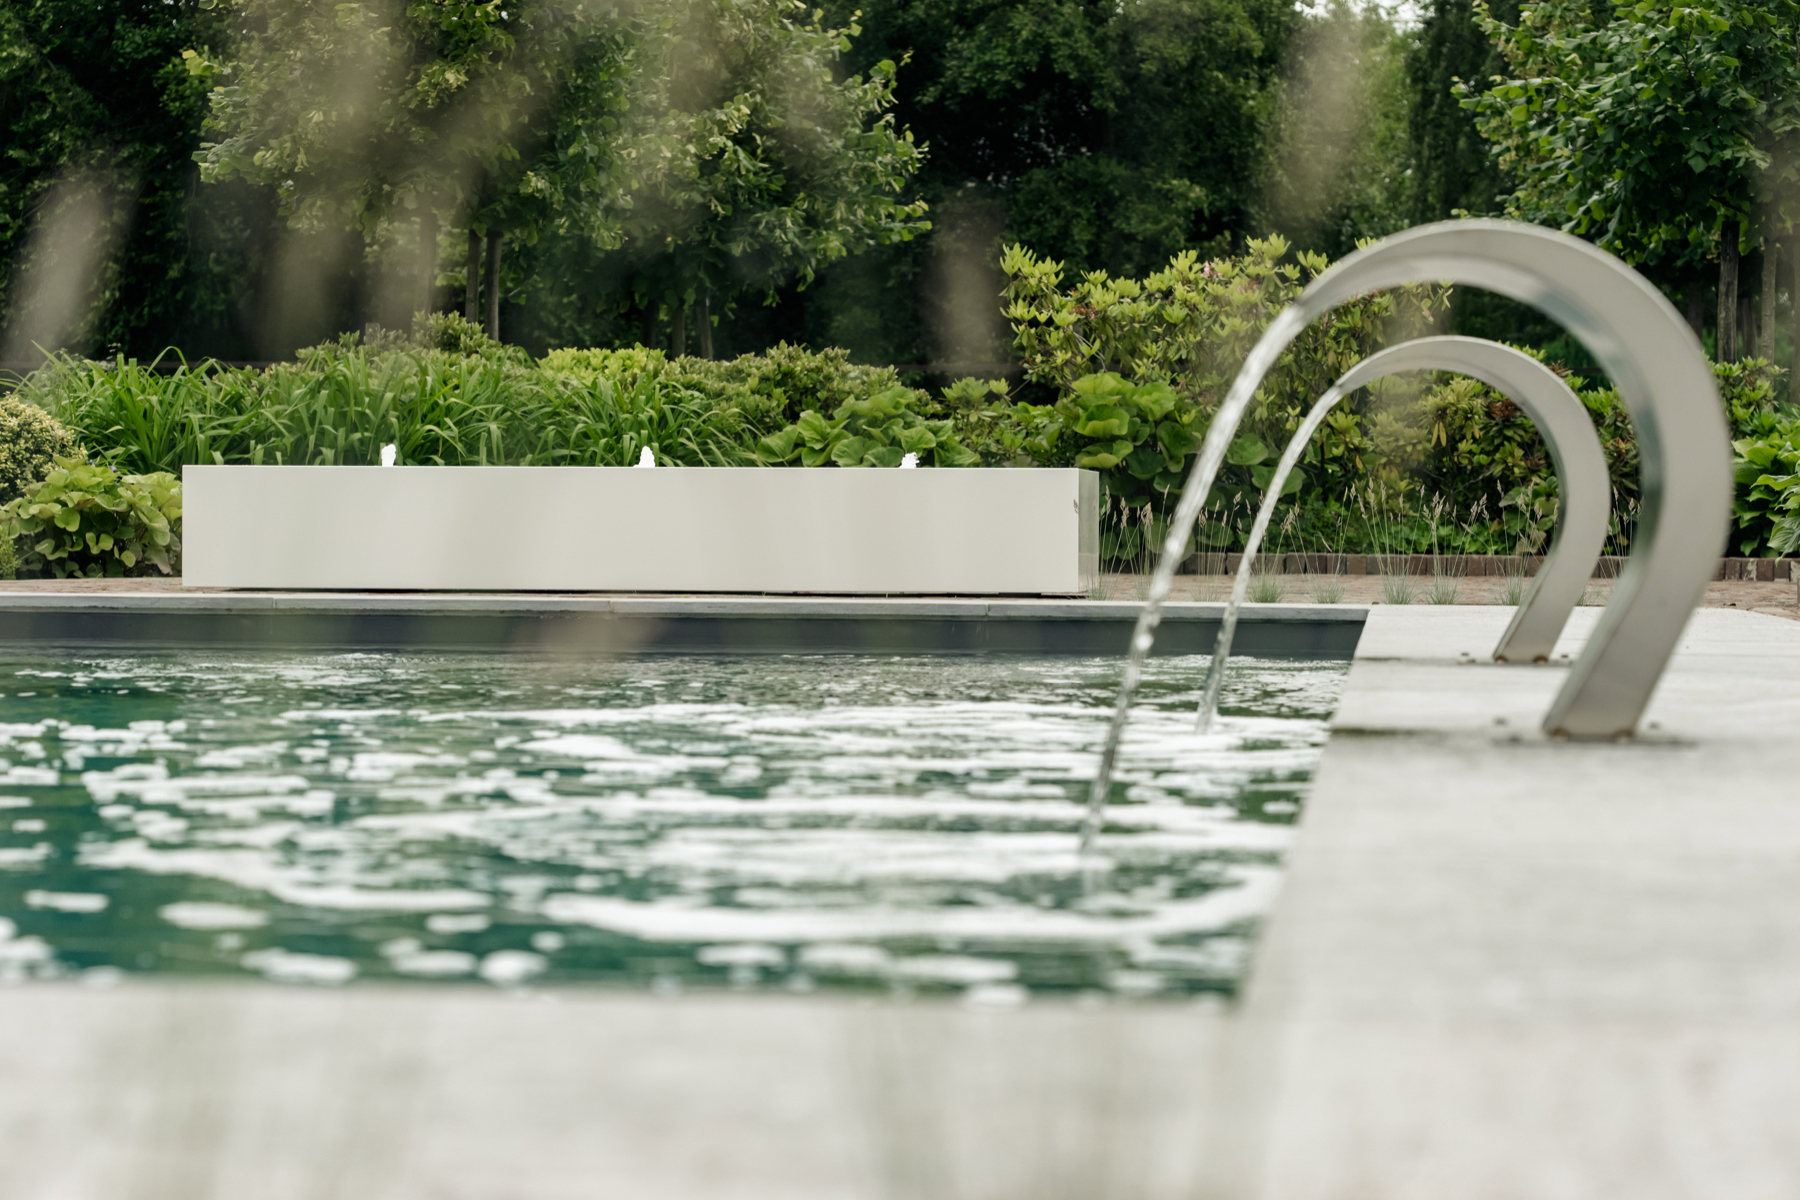 Dit zwembad krijgt een eigentijds karakter door de aanwezigheid van dit strakke waterornament.